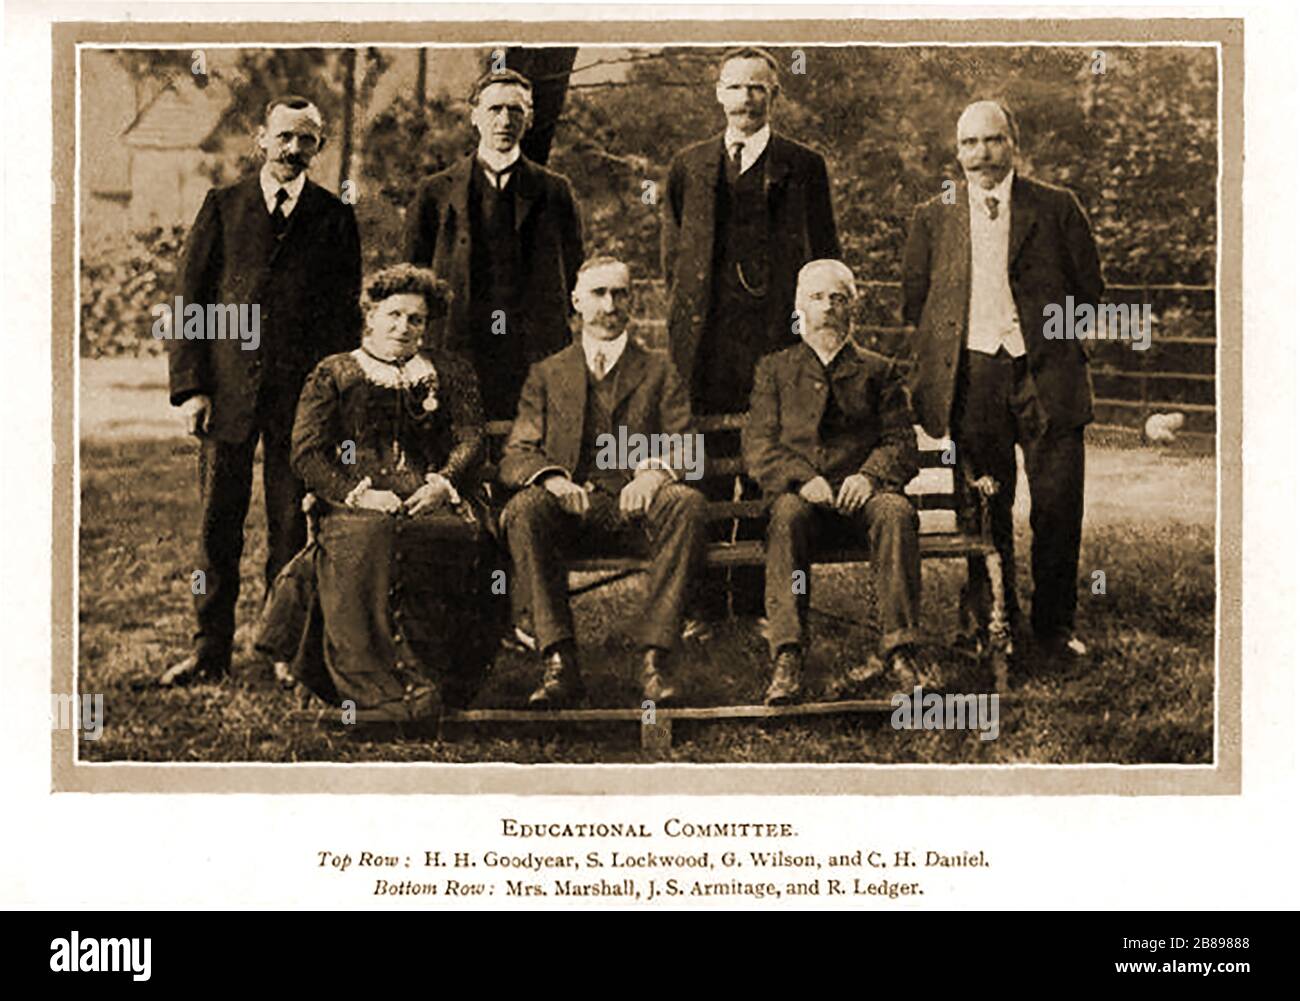 HUDDERSFIELD Industrial Society - photo de portrait précoce du Comité de l'éducation avec des noms - Goodyear, Lockwood, Wilson, Daniel, Mme Marshall, Armitage, Ledger. Banque D'Images